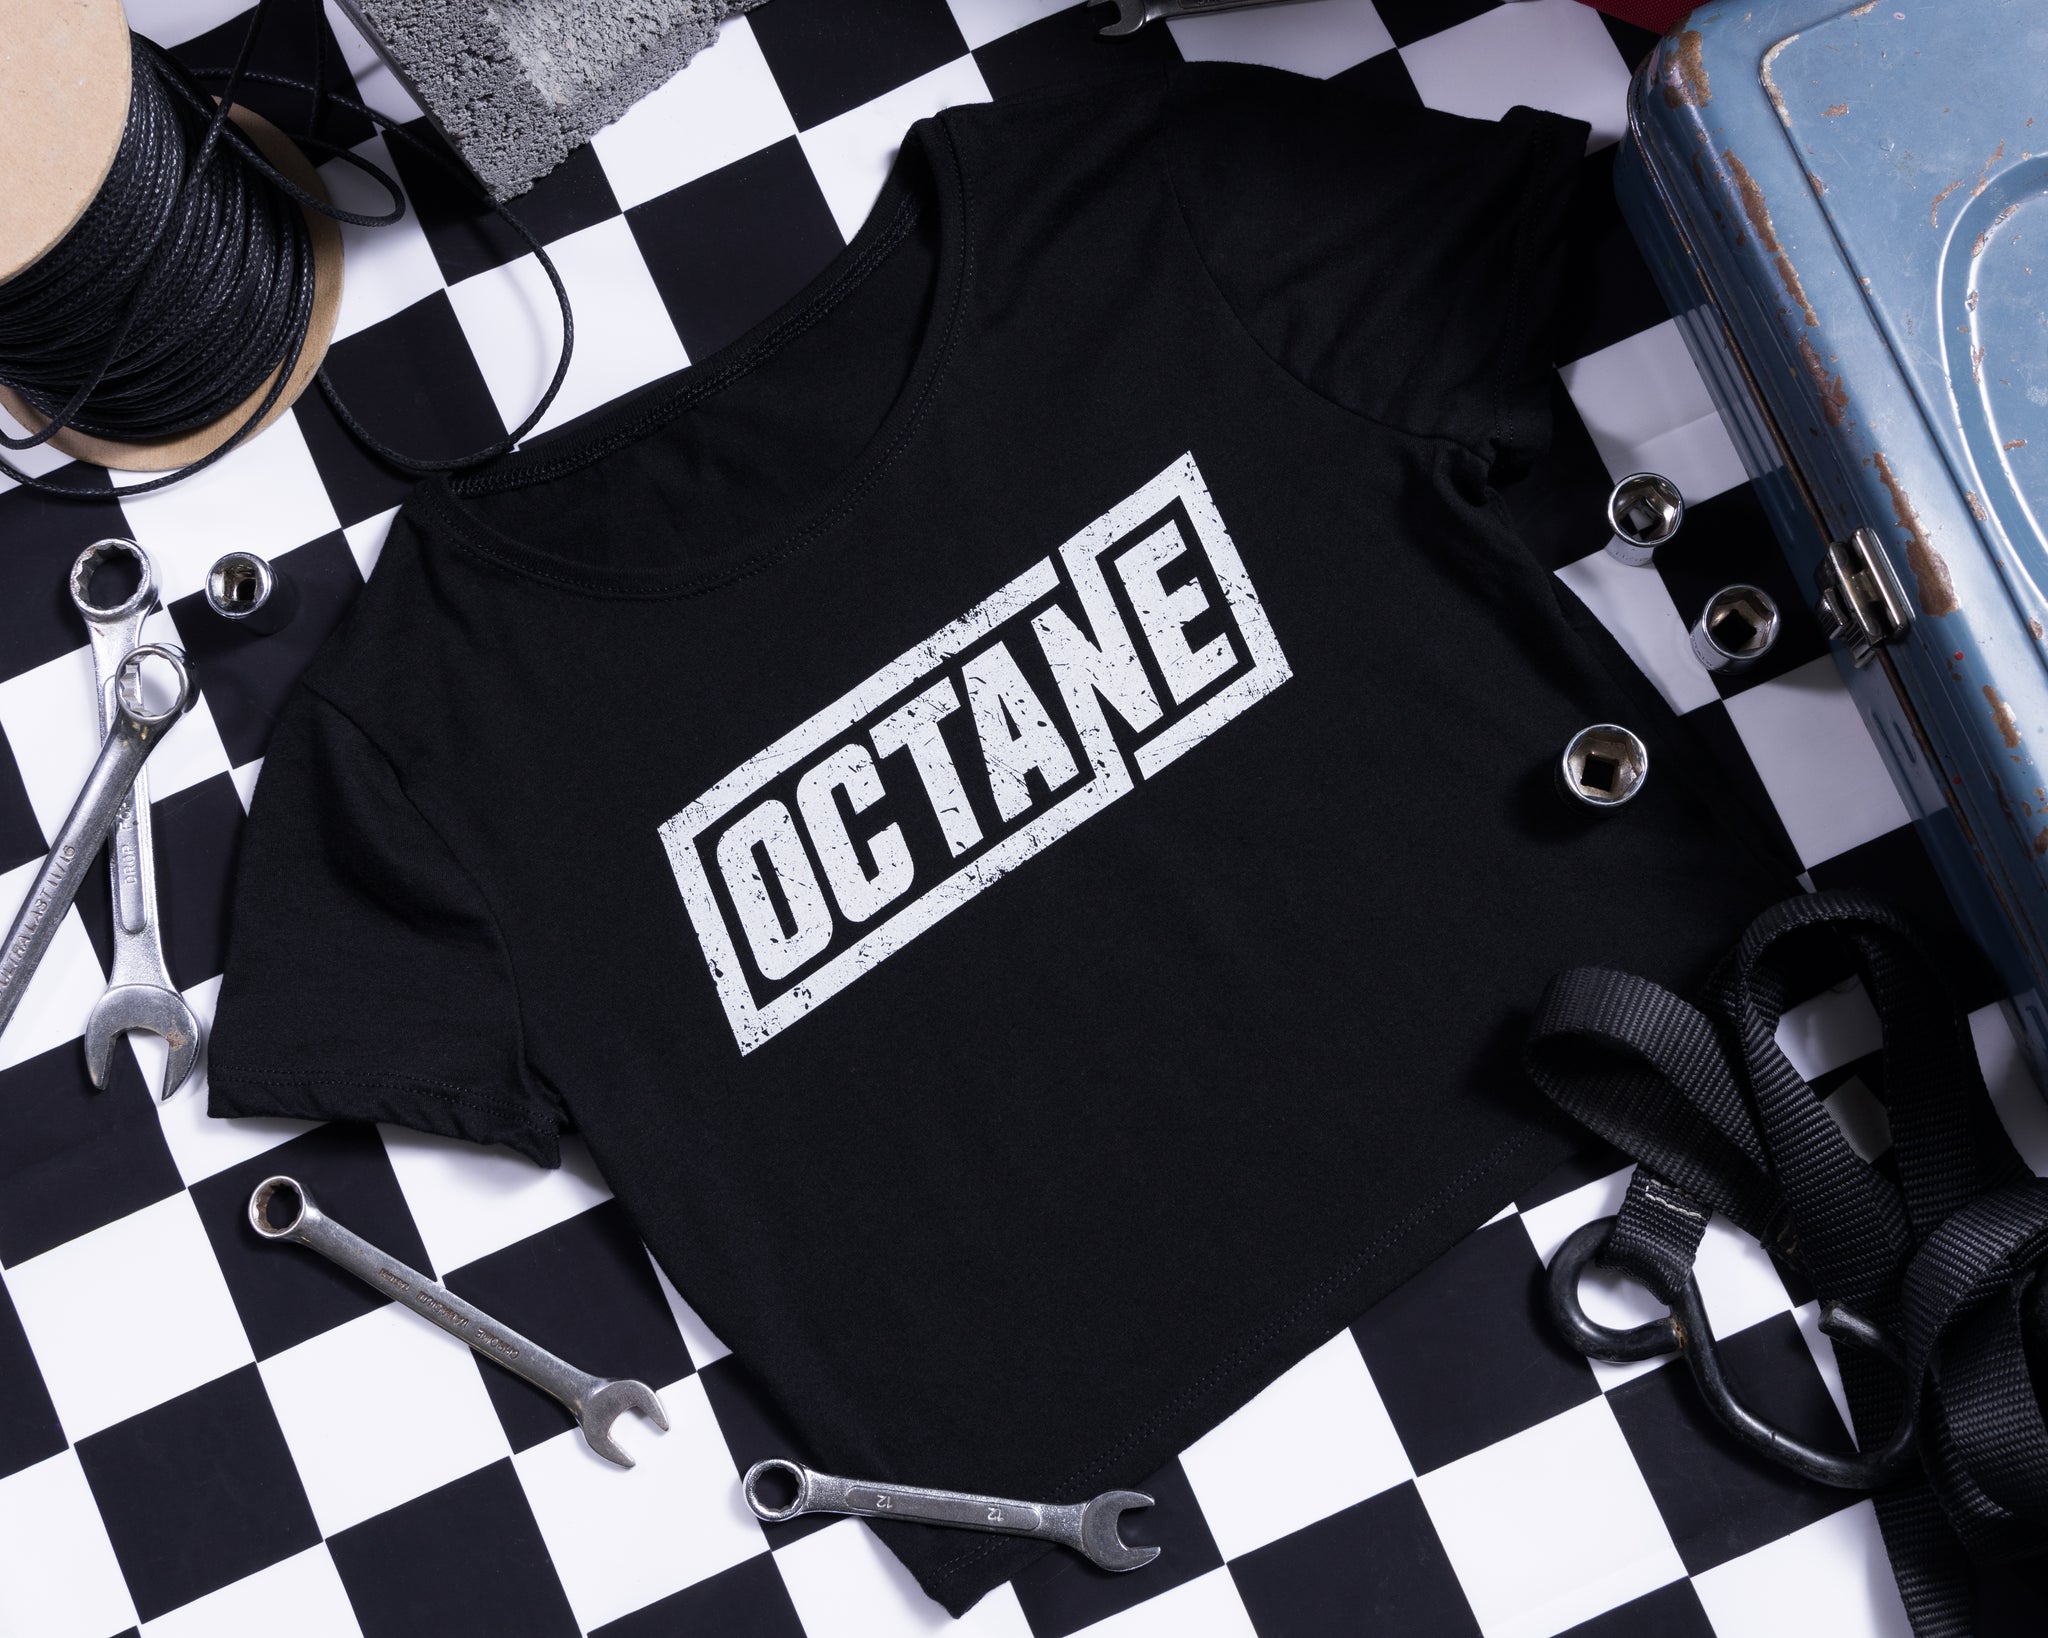 Octane: Crop T-shirt